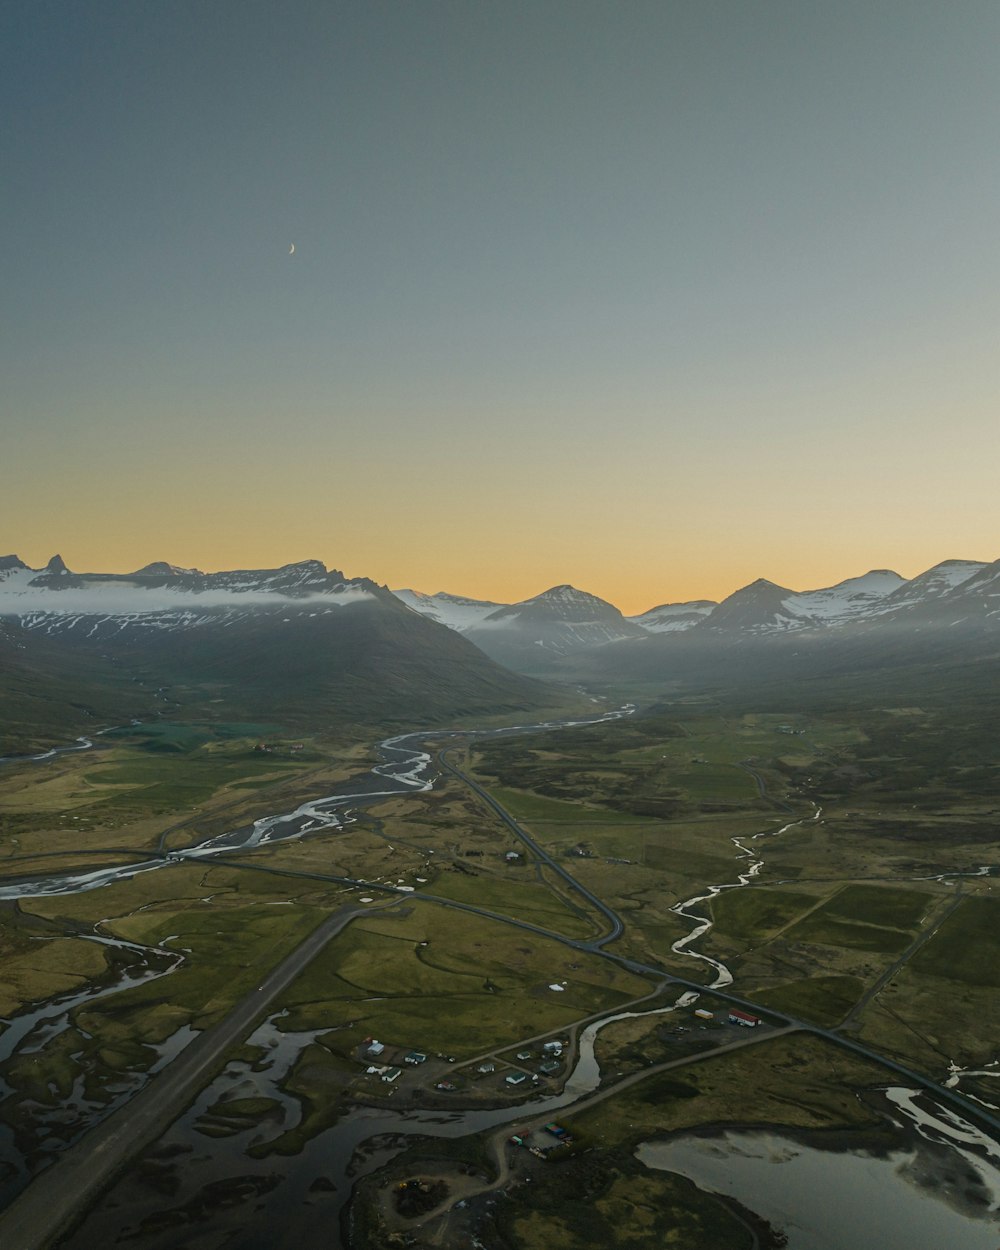 une vue aérienne d’une chaîne de montagnes traversée par une rivière